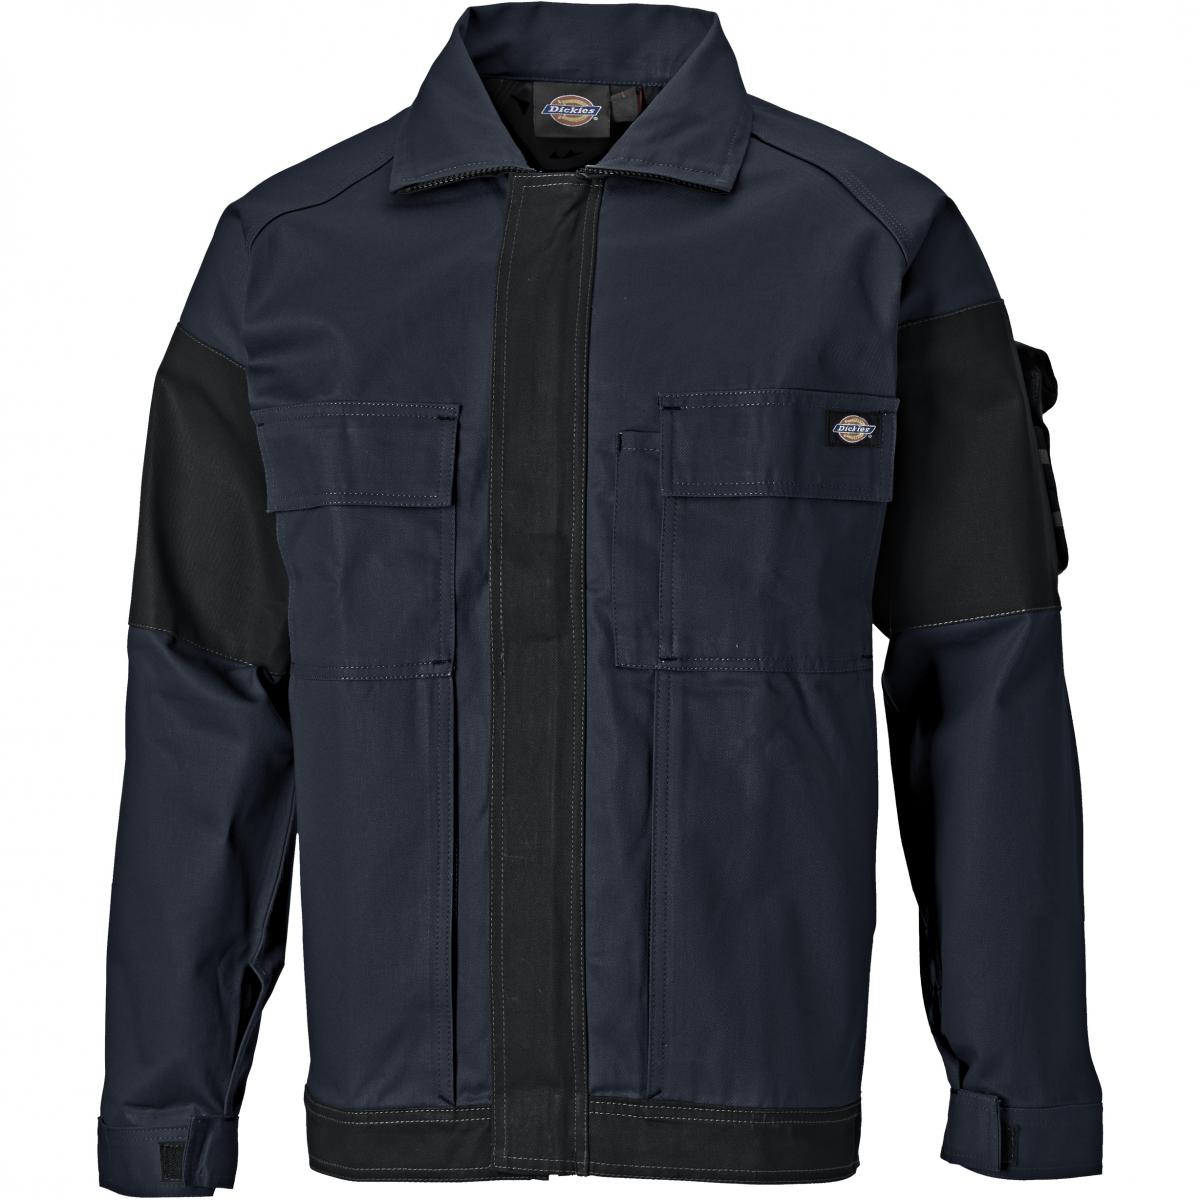 Hersteller: Dickies Herstellernummer: WD4910 Artikelbezeichnung: GDT 290 Jacke - Arbeitsjacke Farbe: Marineblau/Schwarz